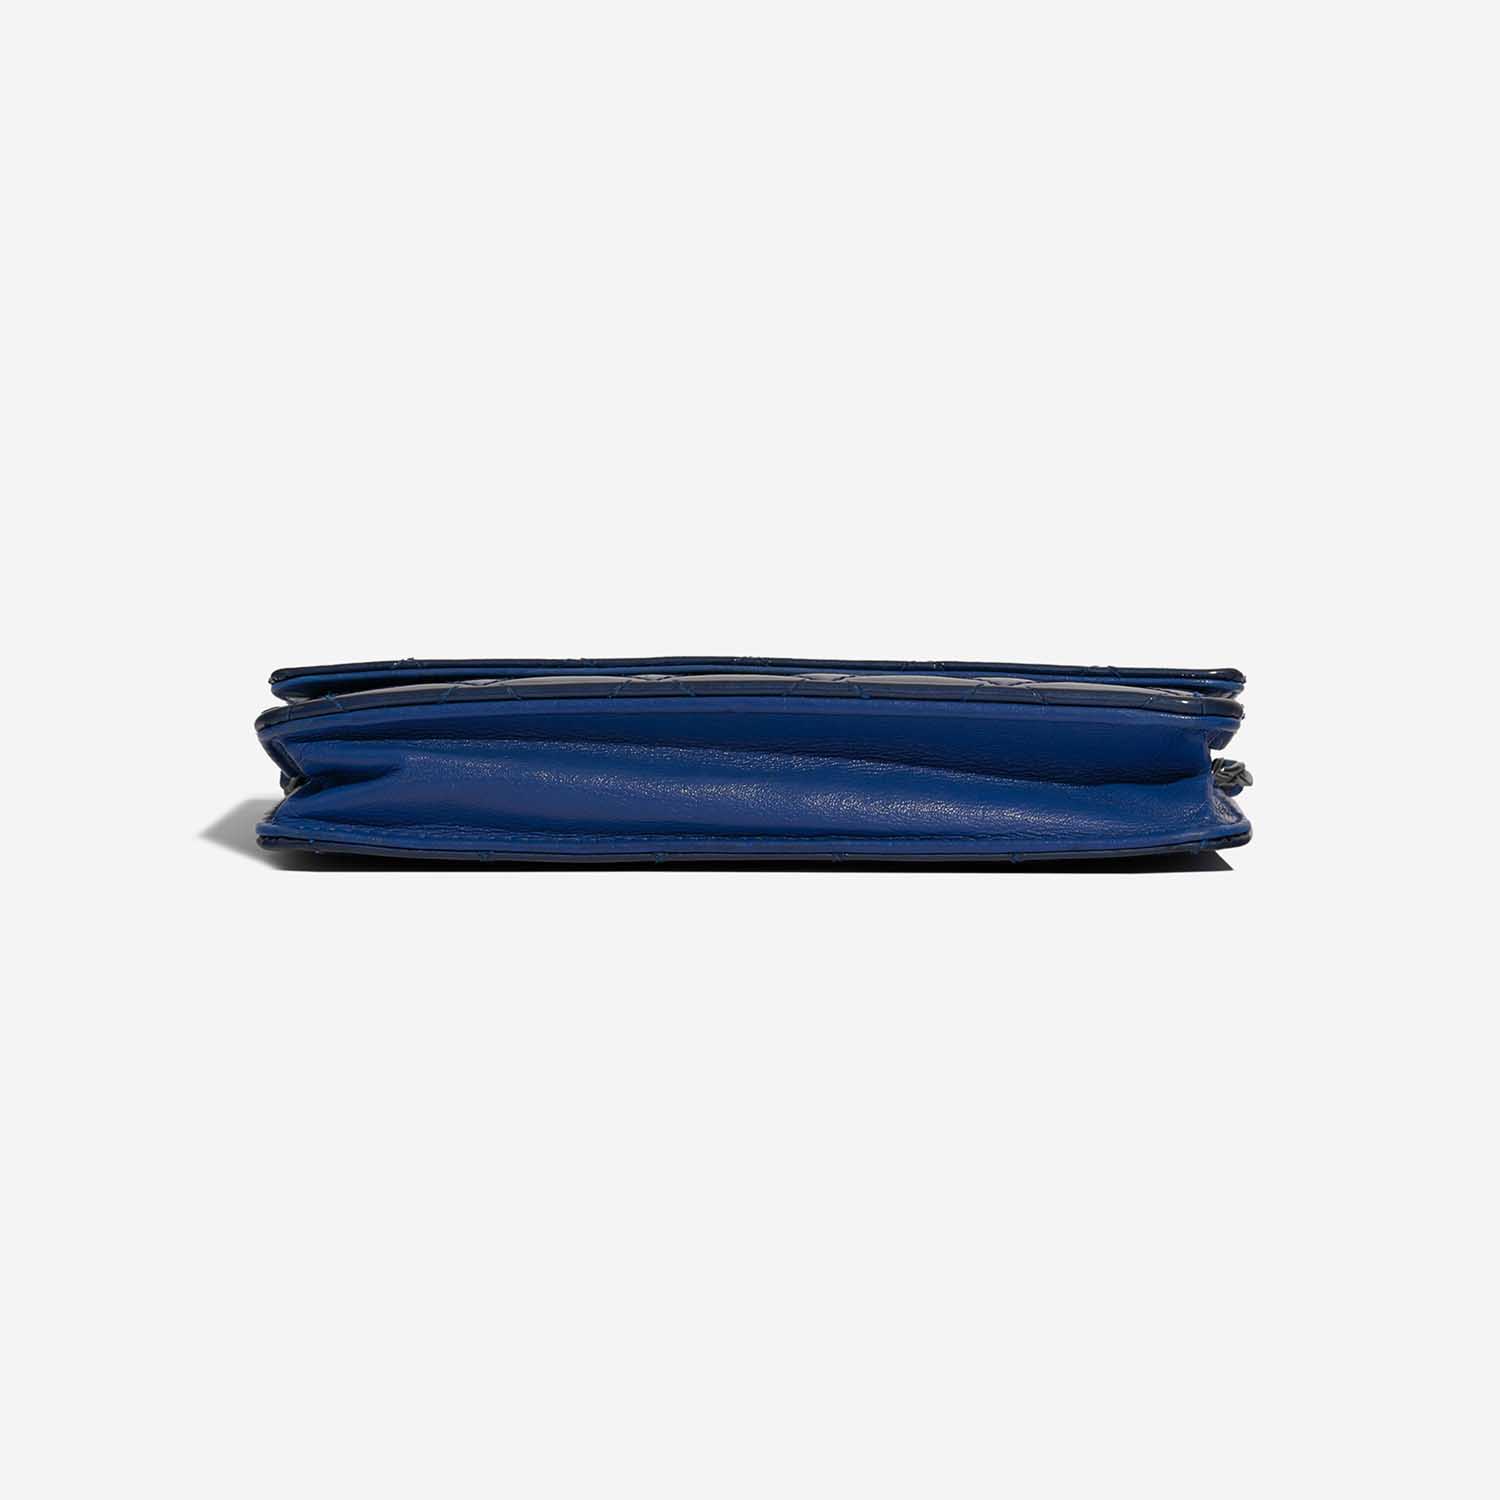 Chanel Timeless WOC Blau 8BTM S | Verkaufen Sie Ihre Designer-Tasche auf Saclab.com